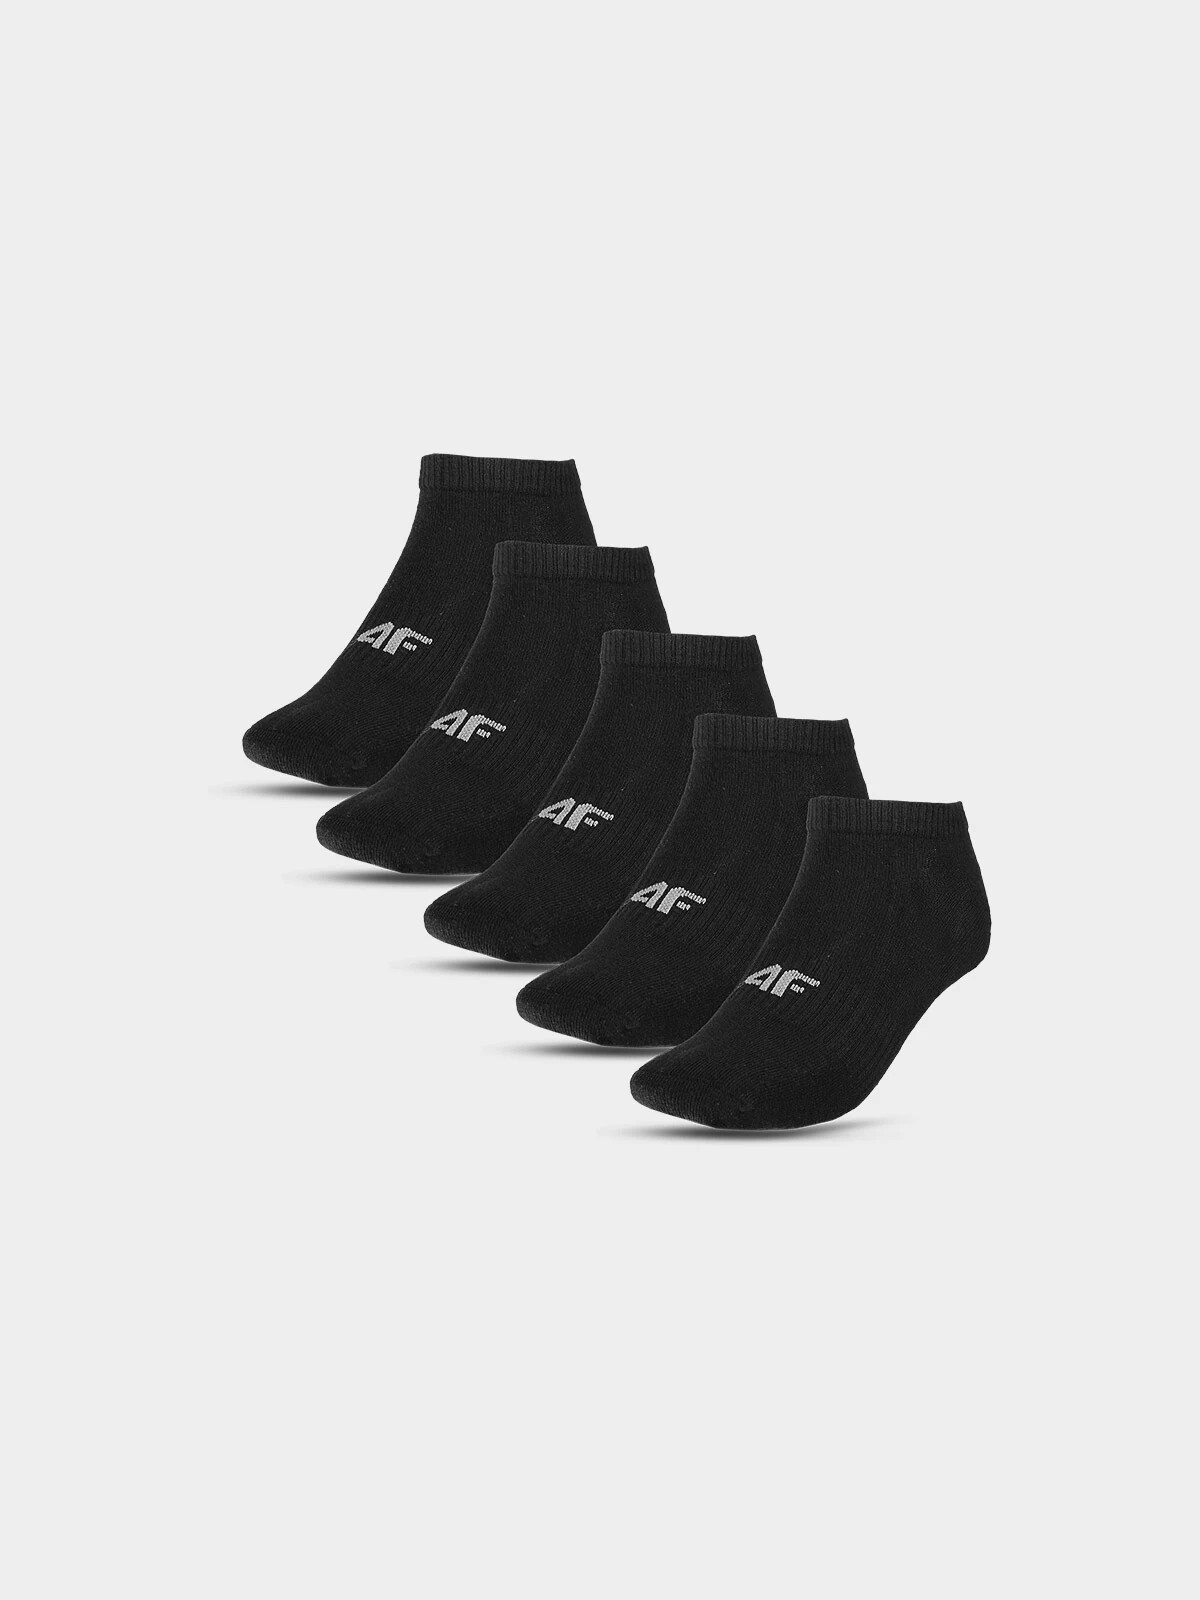 Boys' socks (5pack) 4F - black